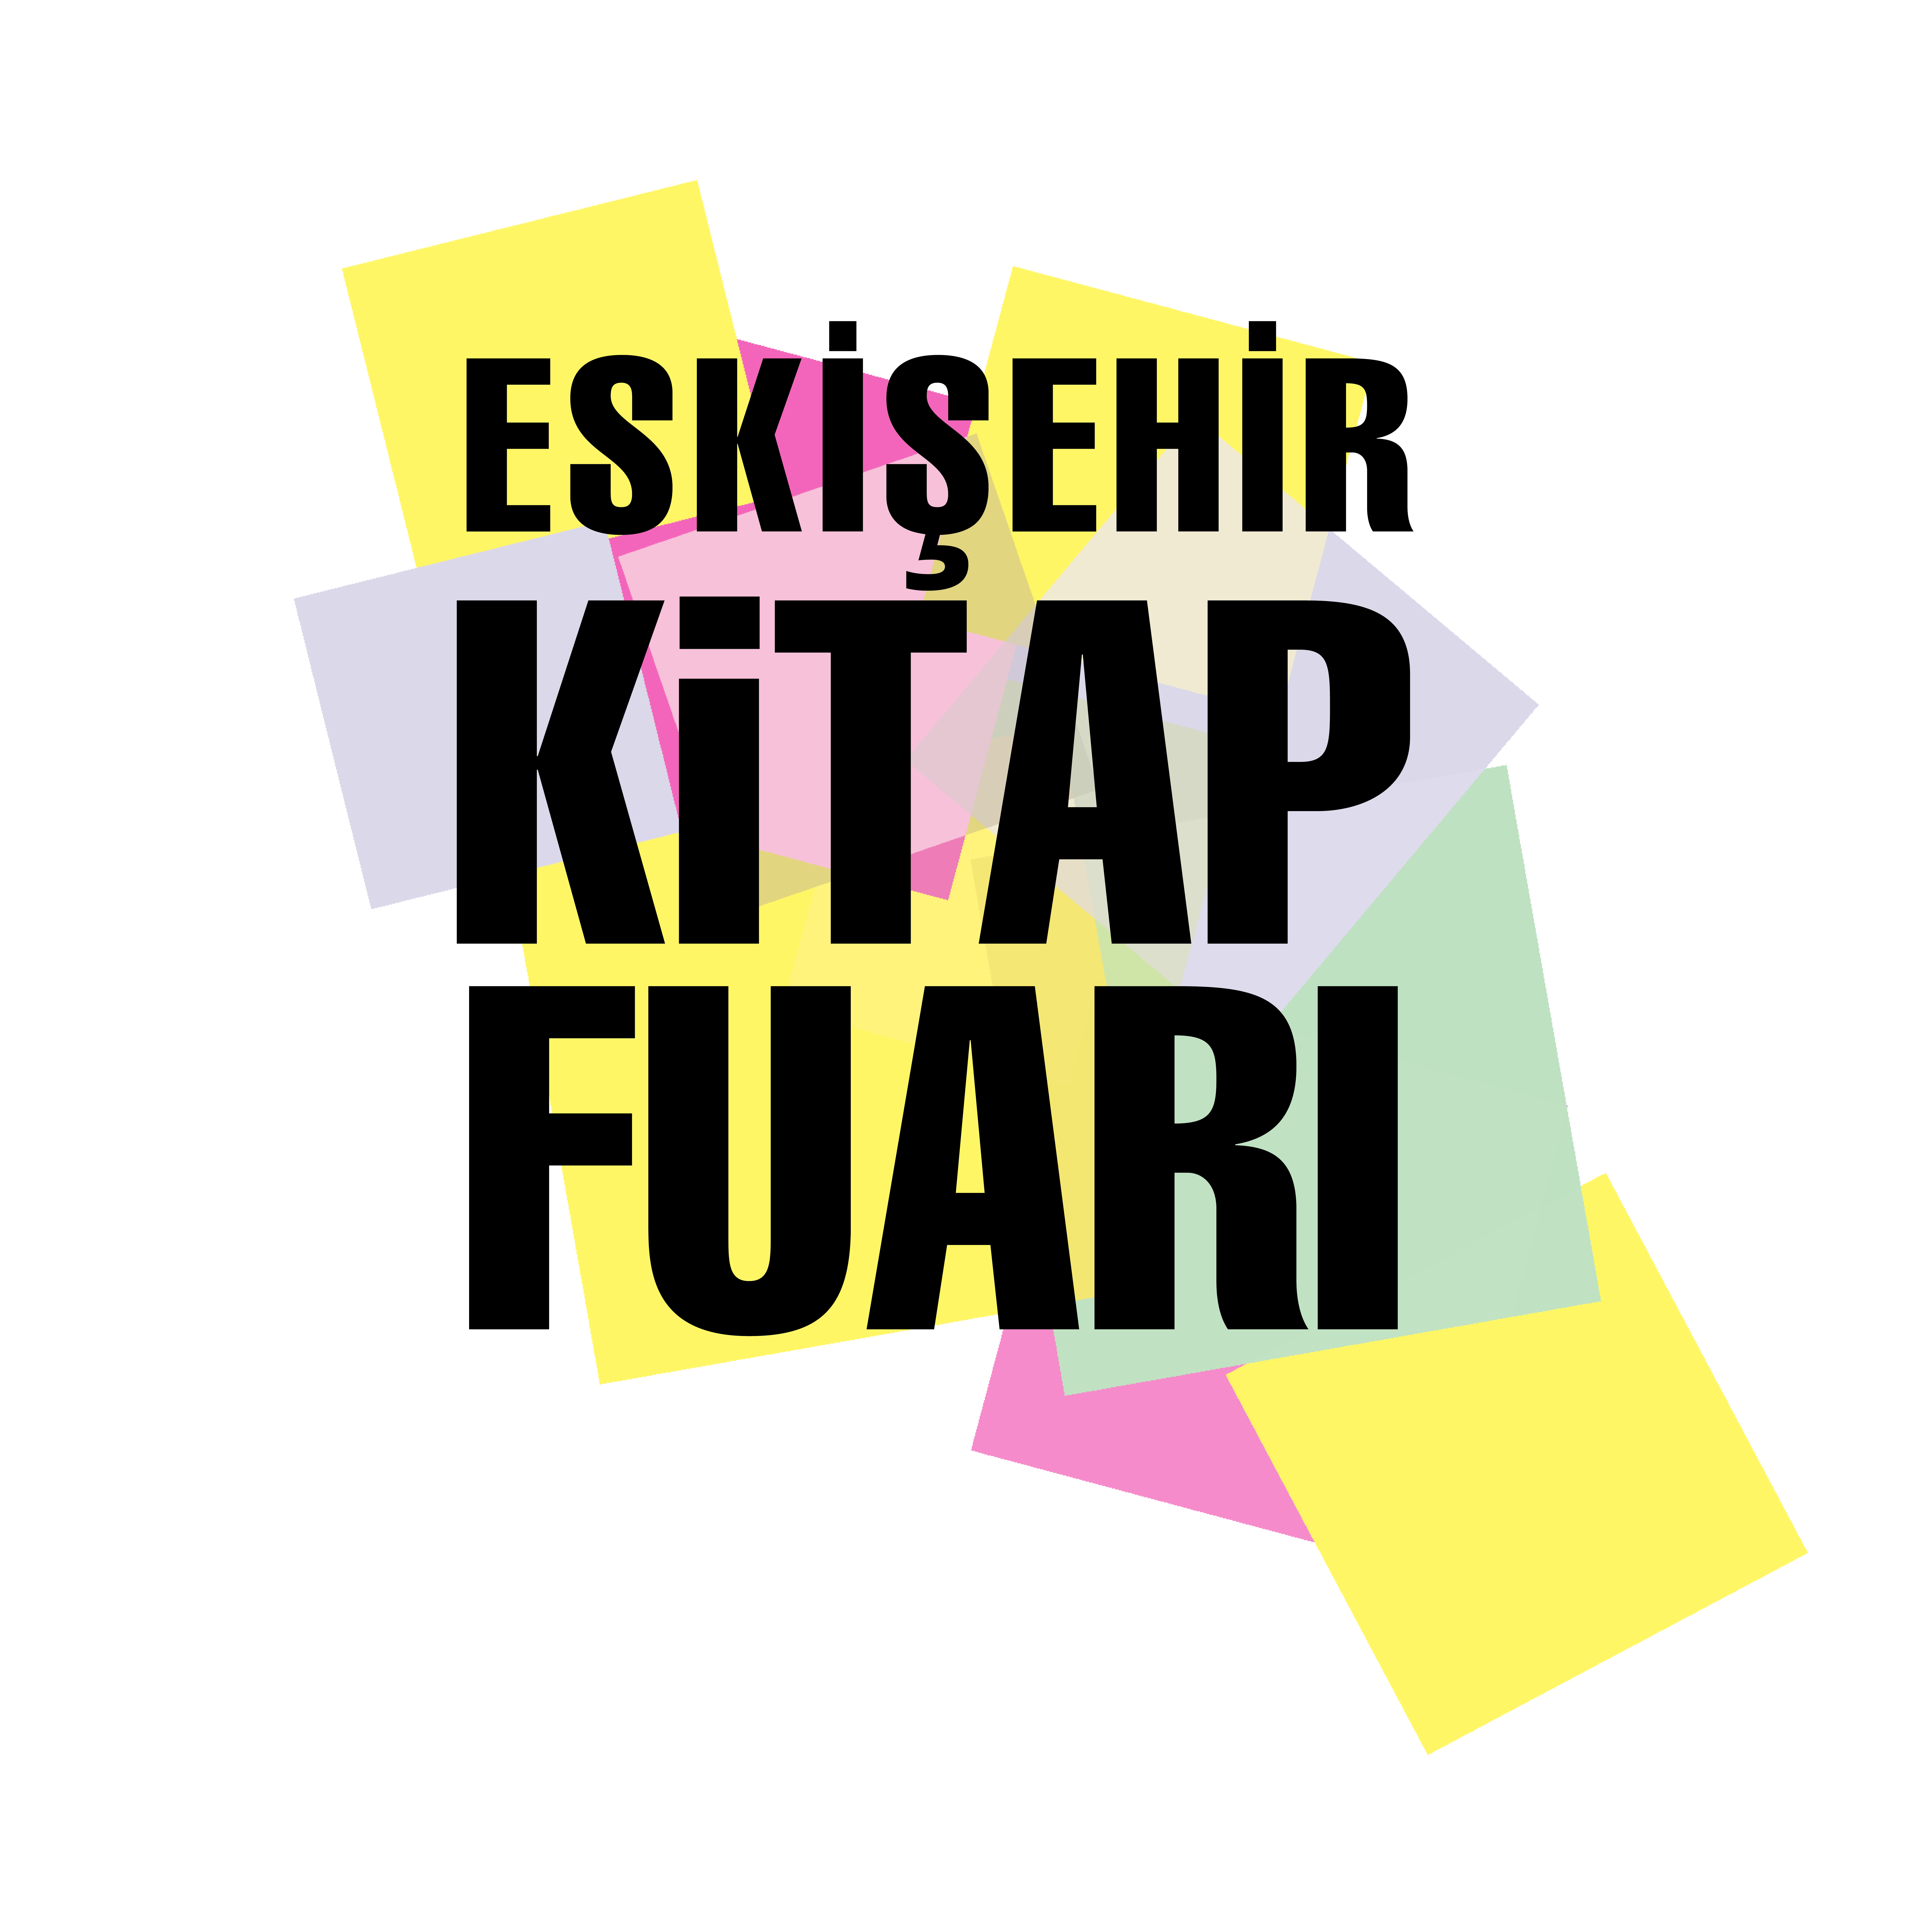 Eskişehir Kitap Fuarı Logo 